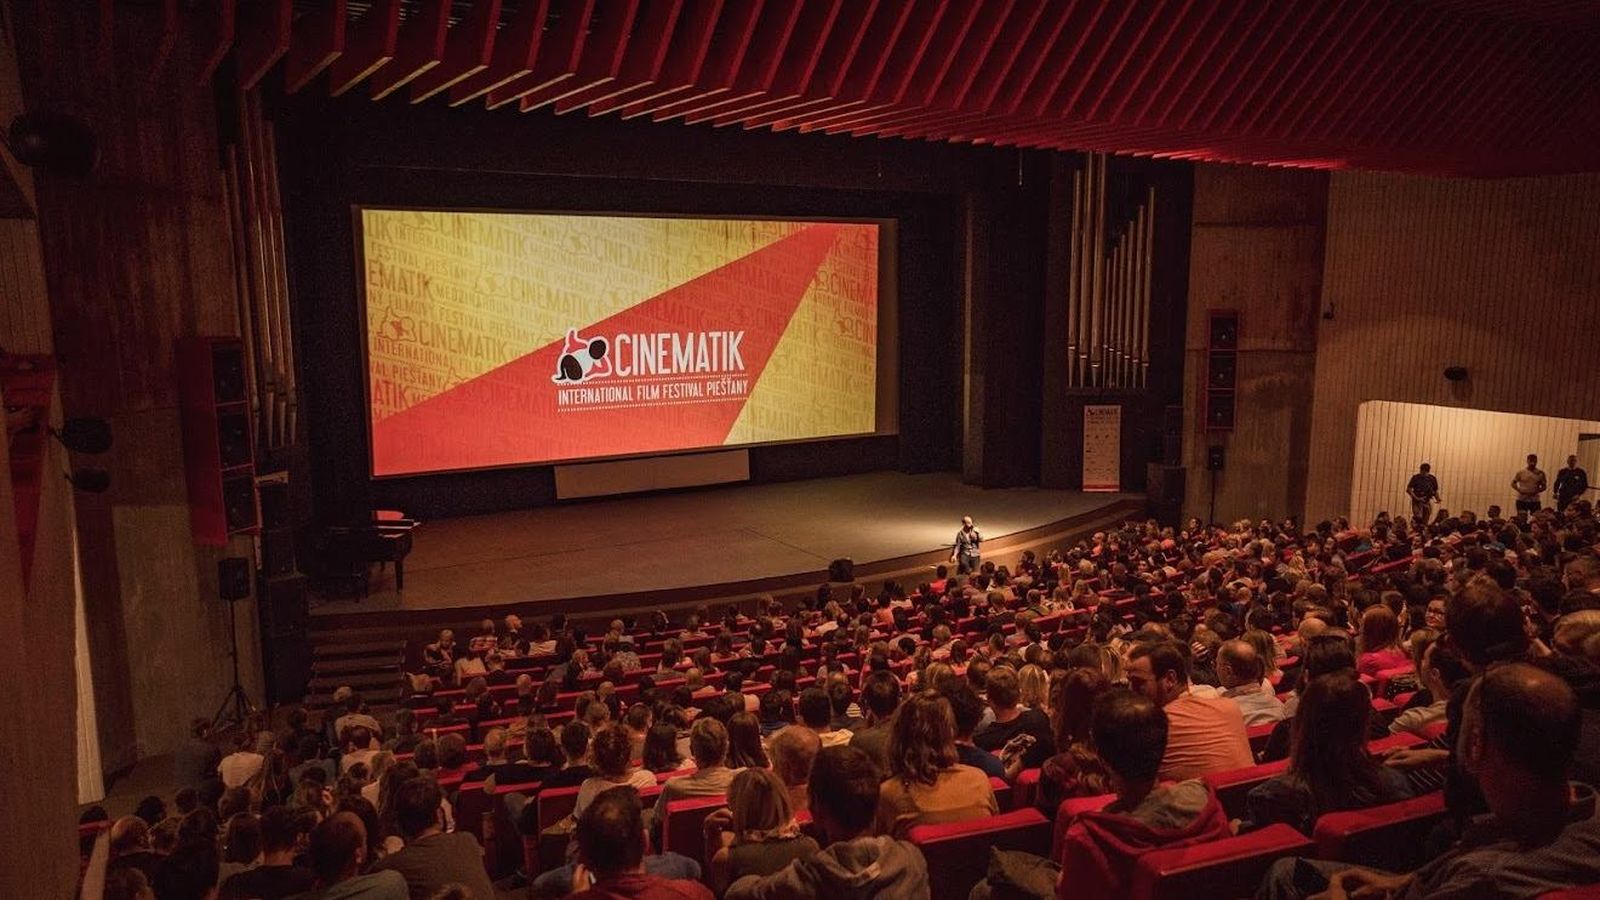 17. Medzinárodný filmový festival Cinematik sa začína už budúci týždeň. Ponúkne viac ako 100 filmov